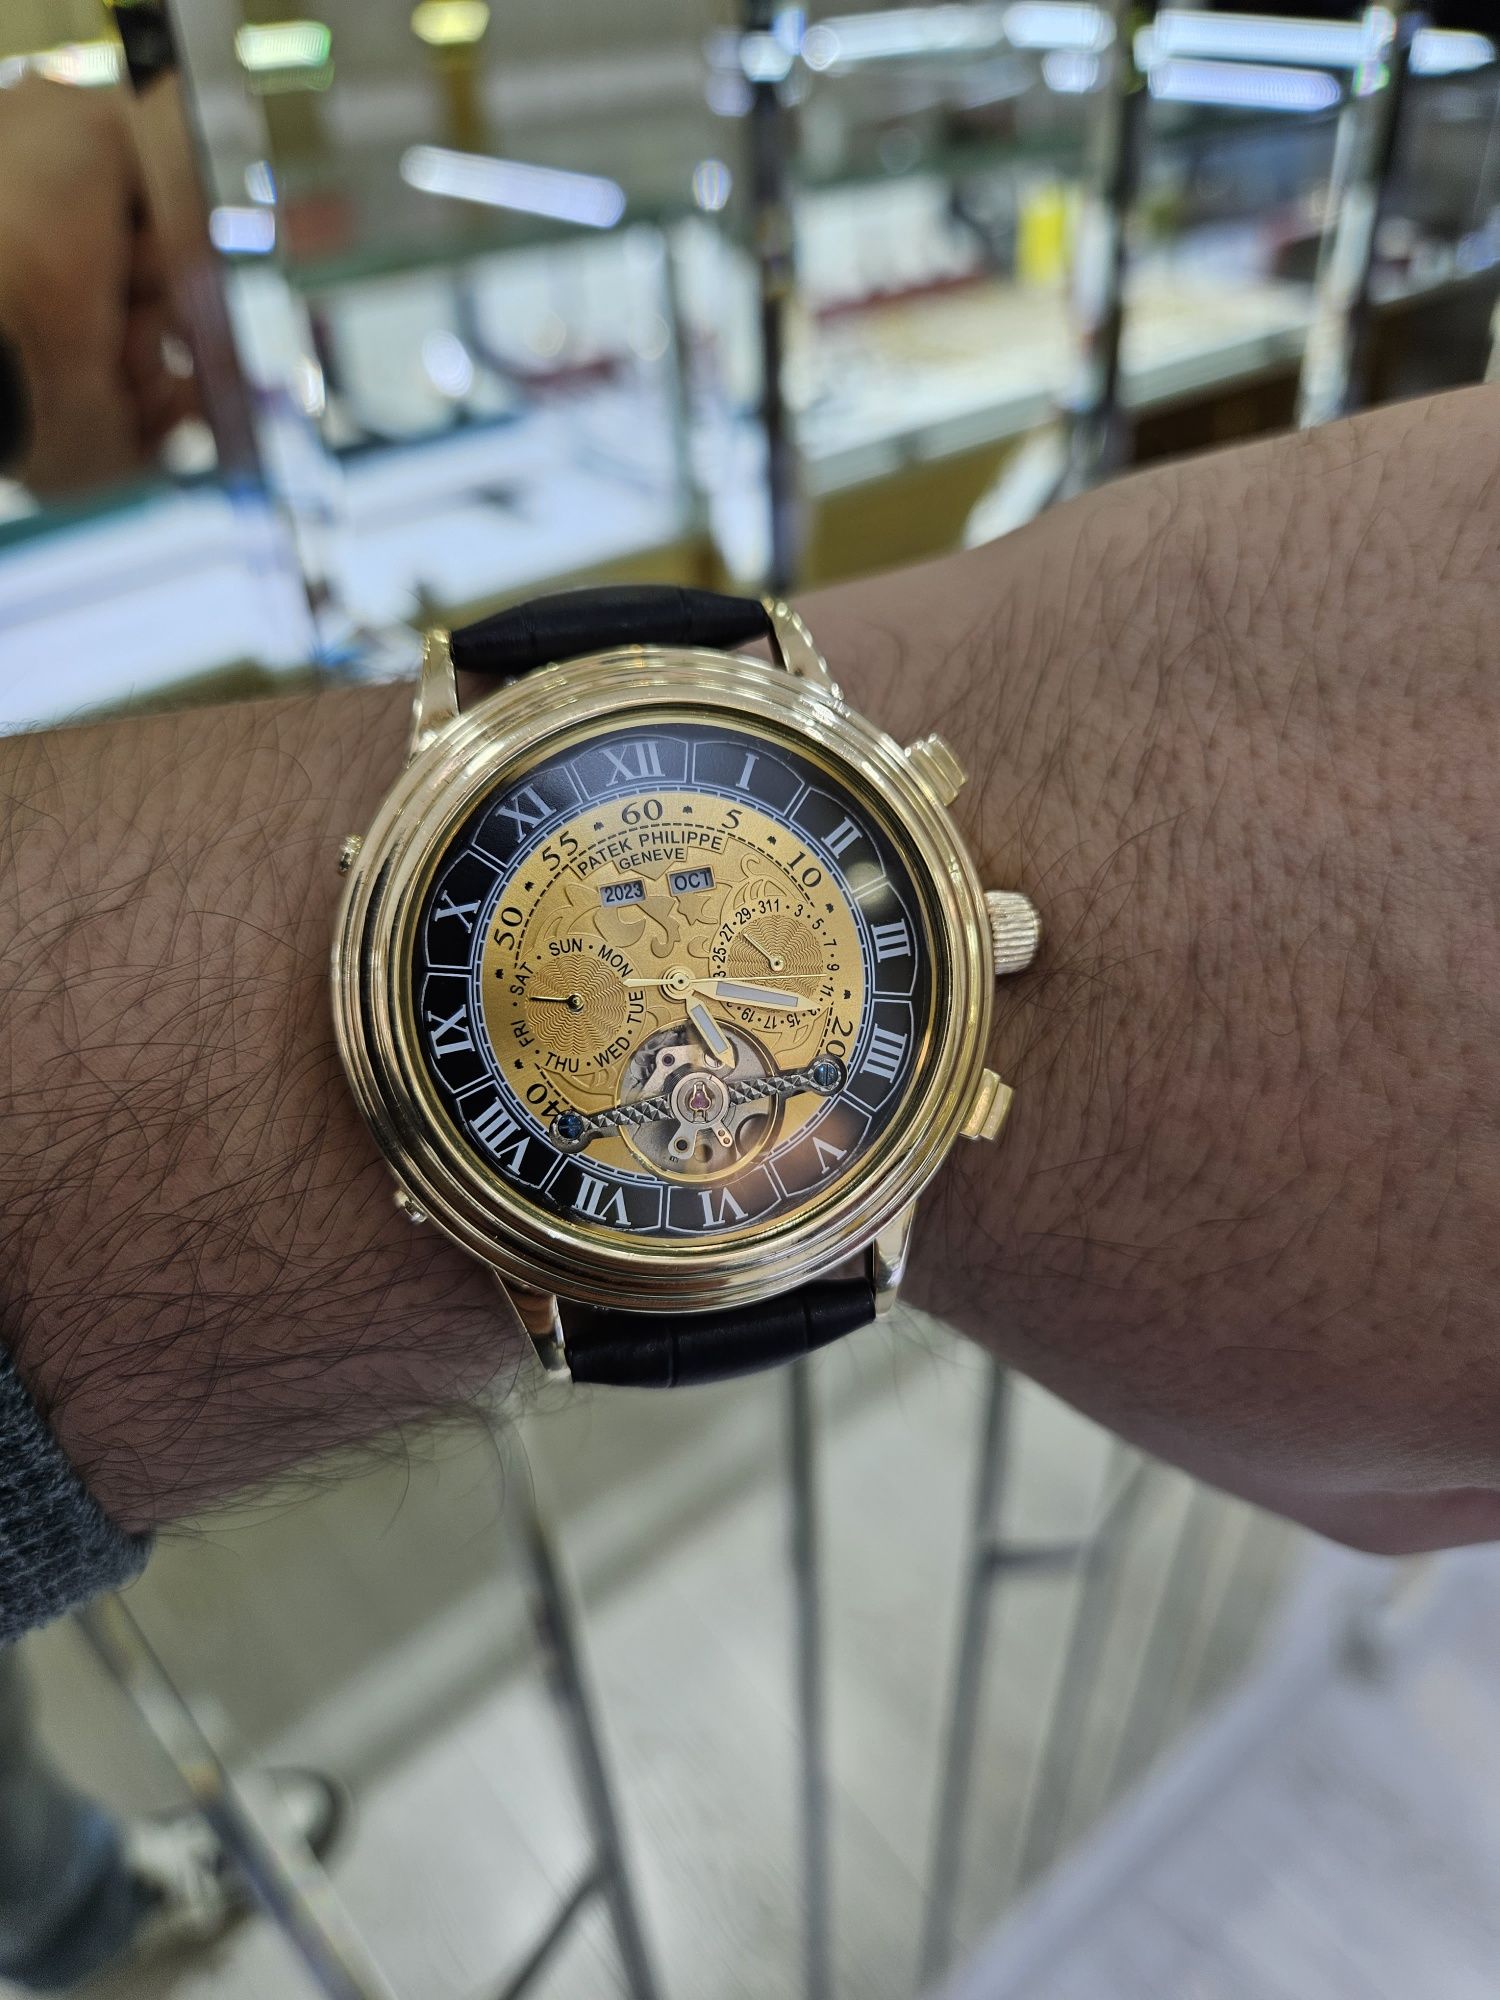 Продам золотые часы Патек Филип крупного размера для крупных мужчин.